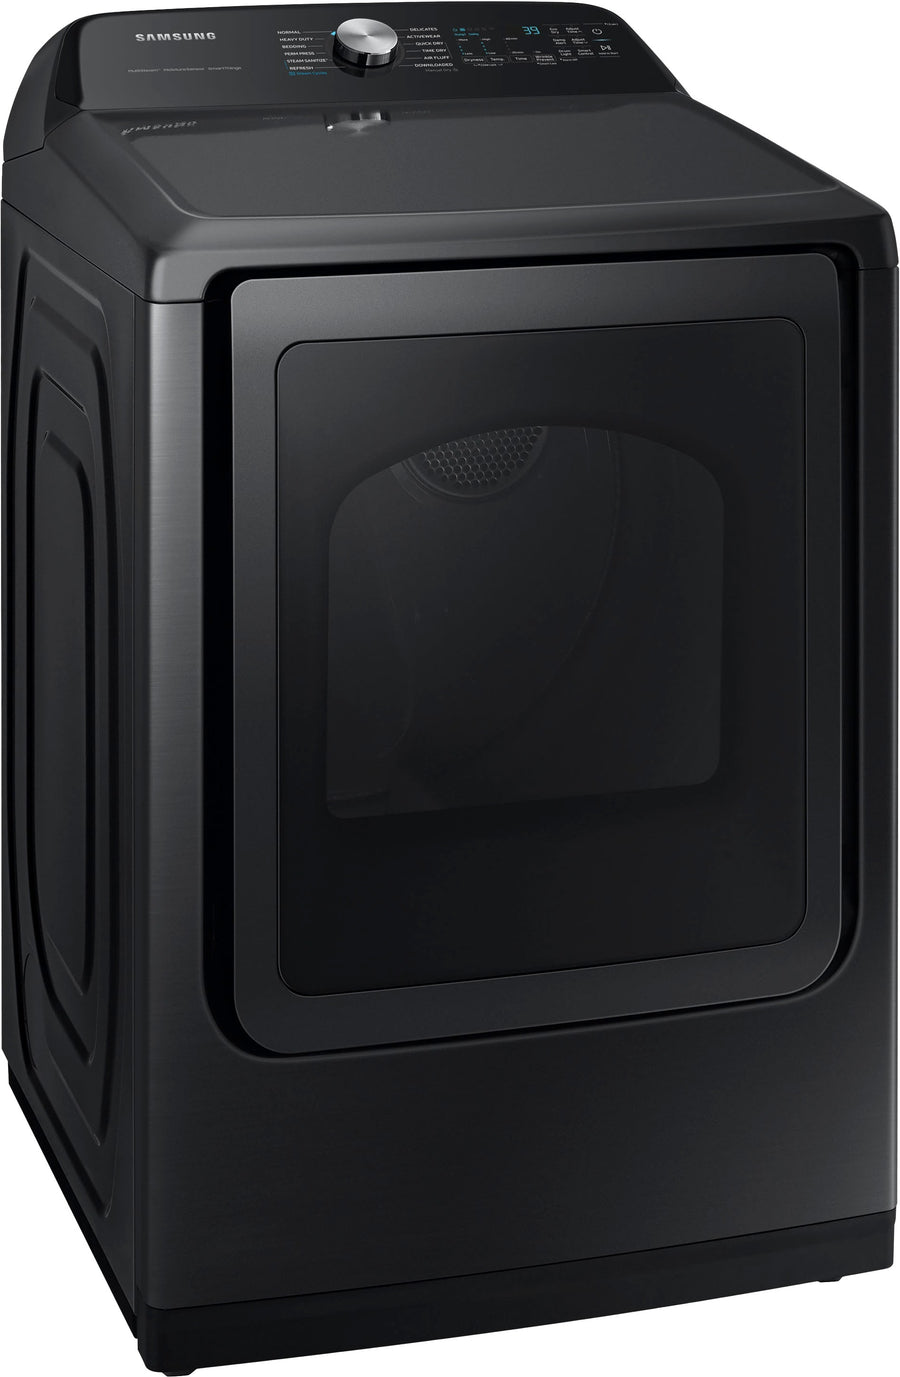 Samsung - 7.4 cu. ft. Smart Gas Dryer with Steam Sanitize+ - Brushed black_0